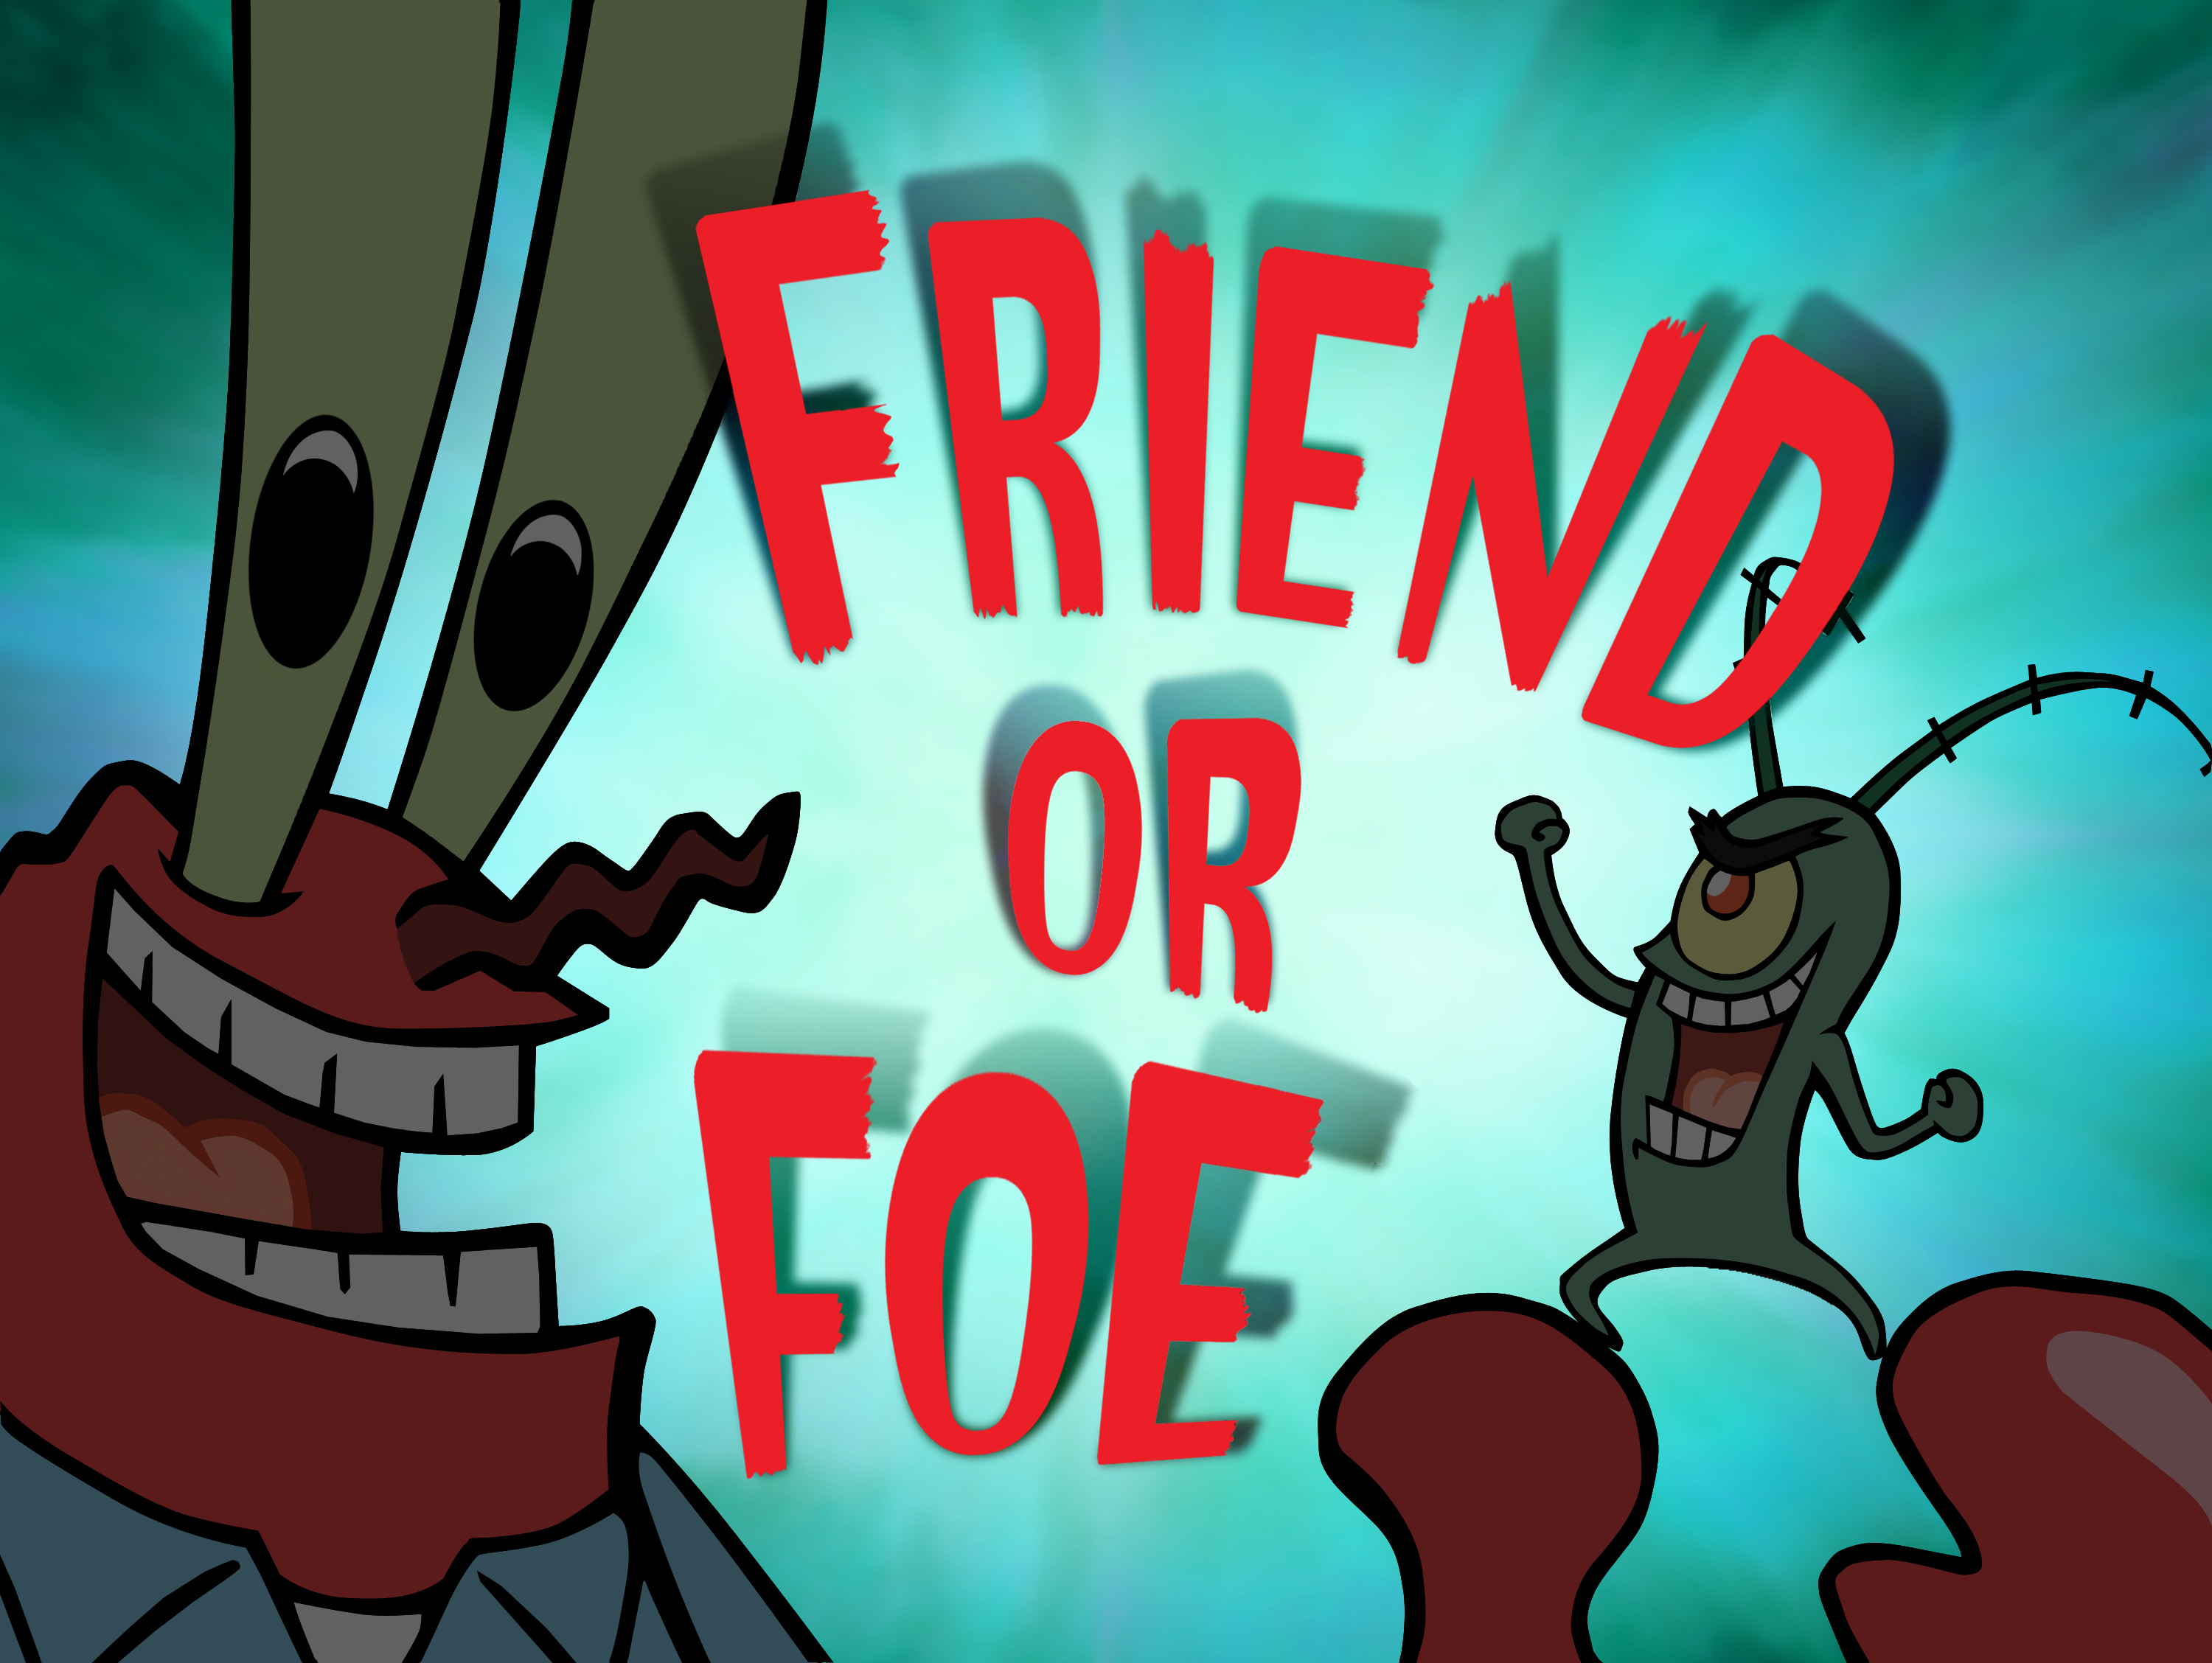 Sponge Bob And Friends Globs of Doom EM espanhol - jogo Wii